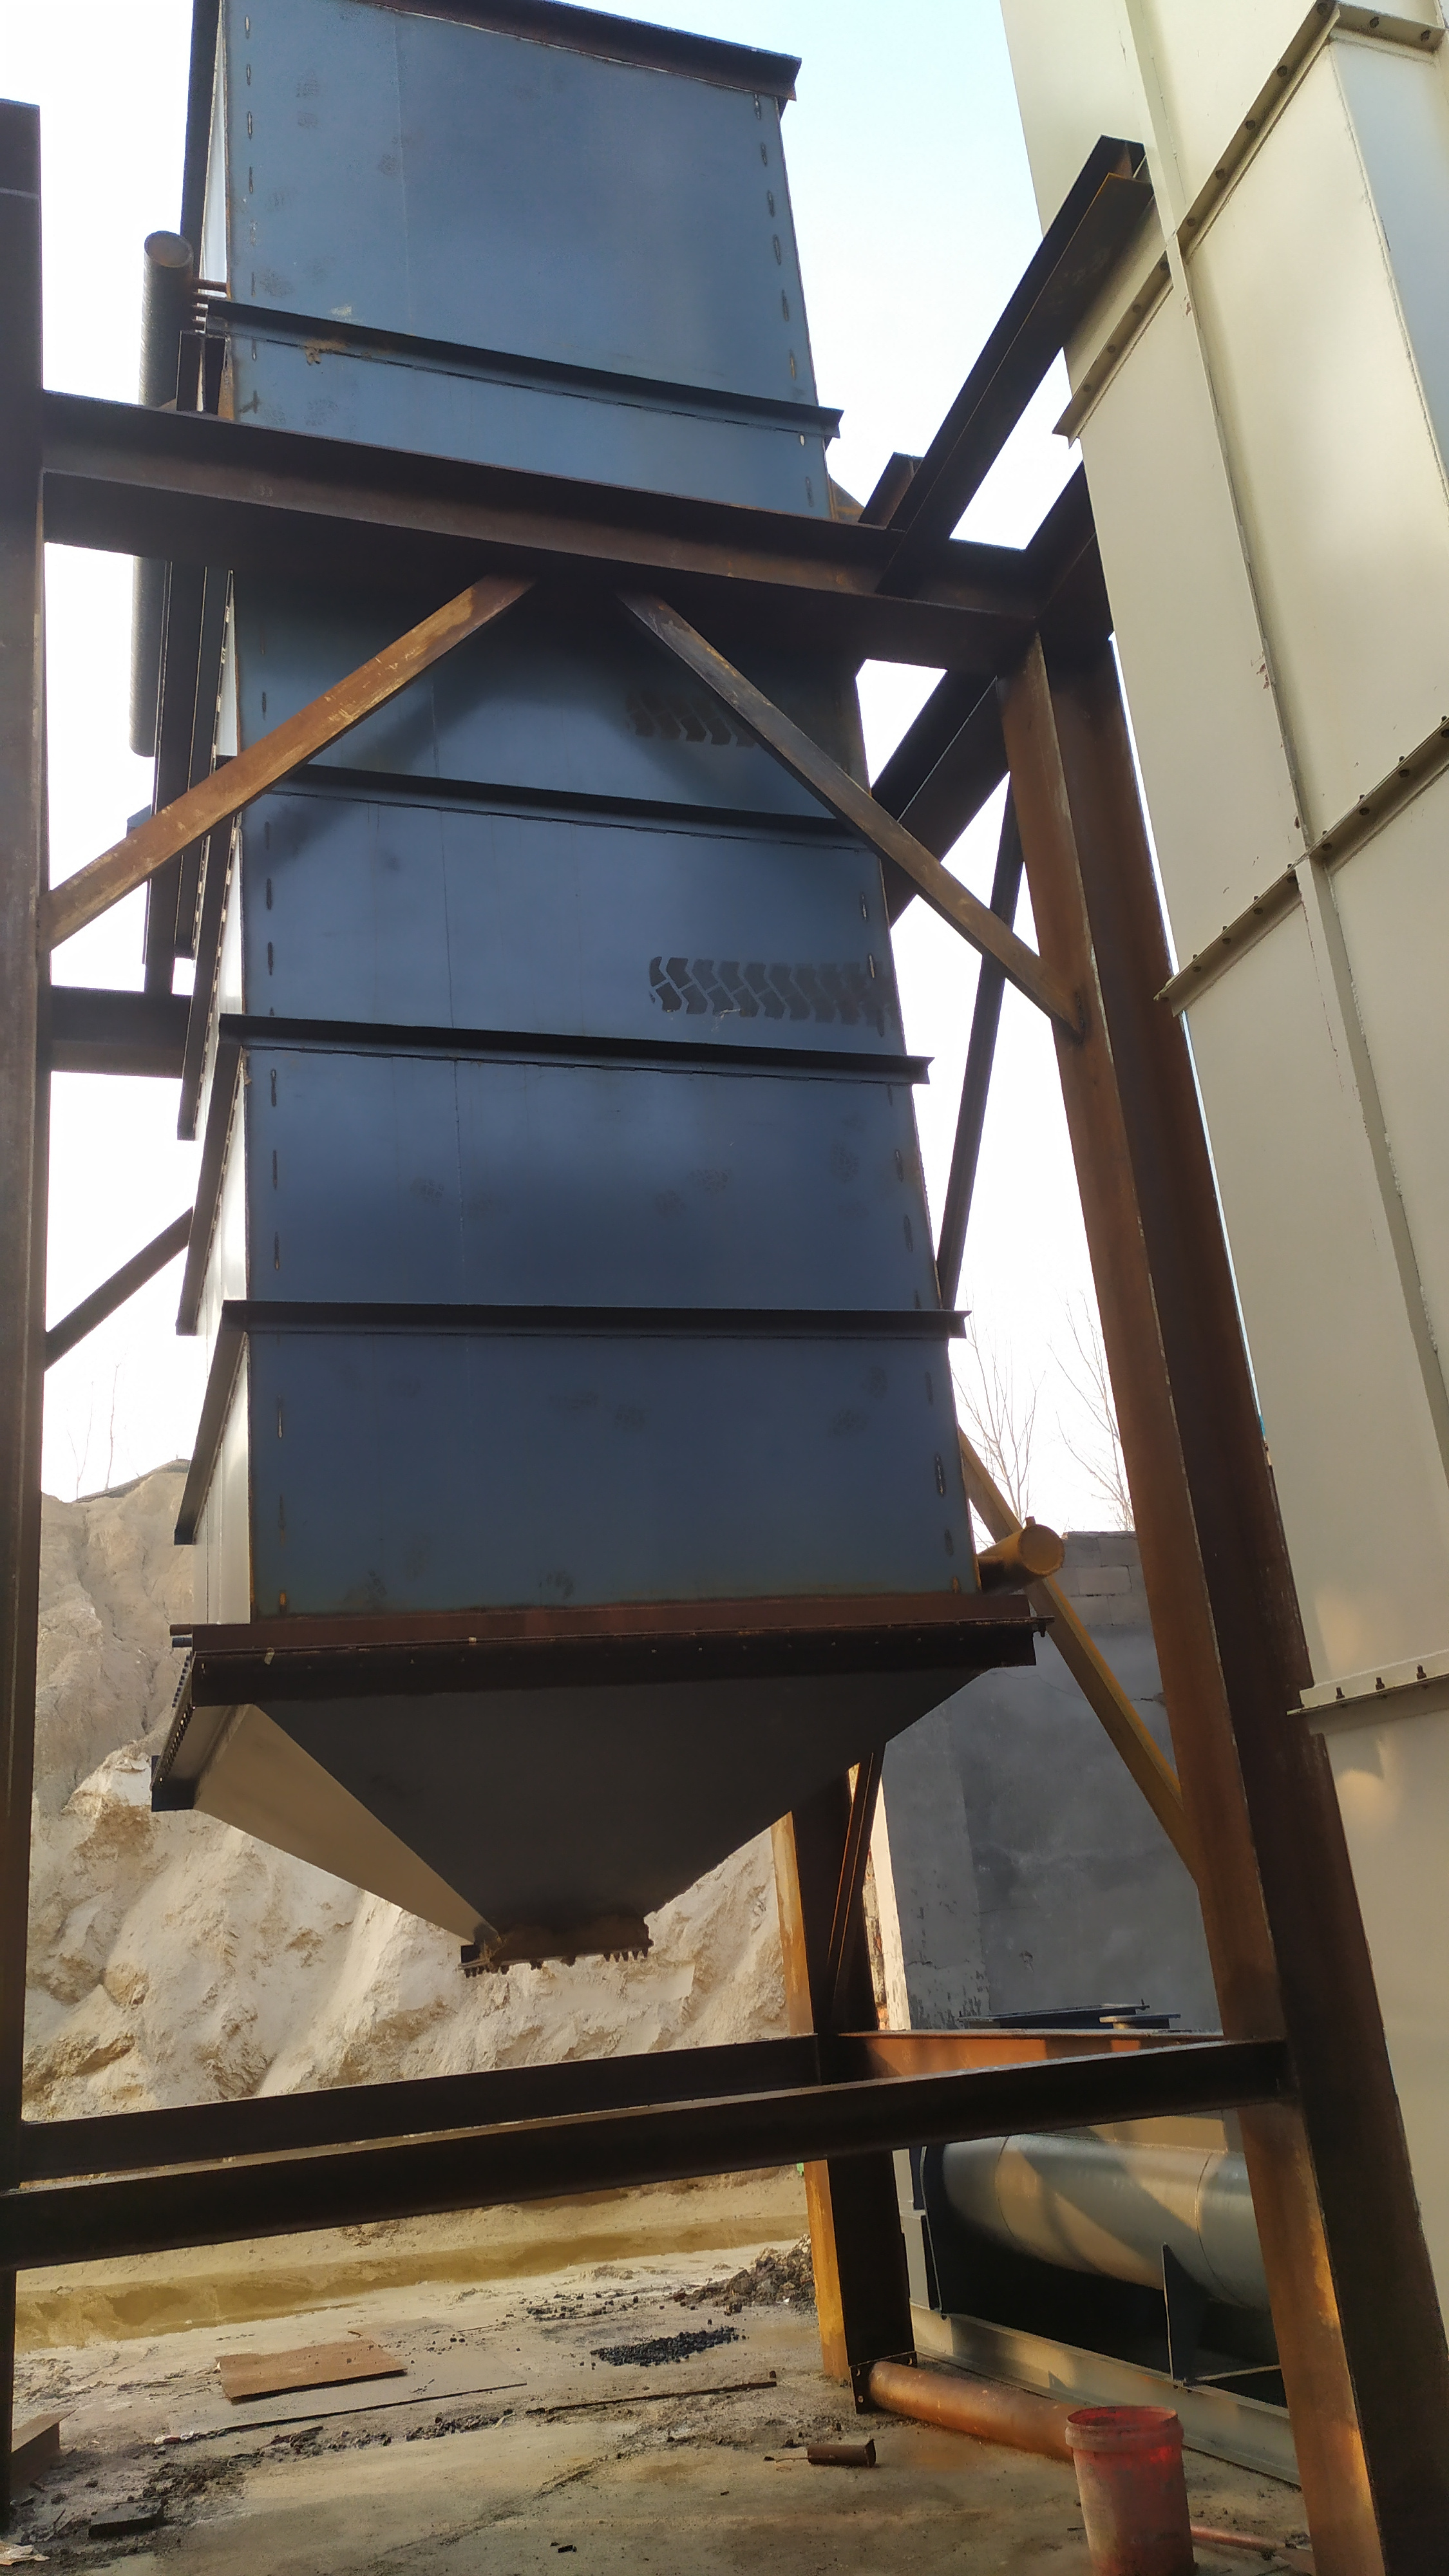 启航机械石膏粉生产线年产10万吨性能可靠